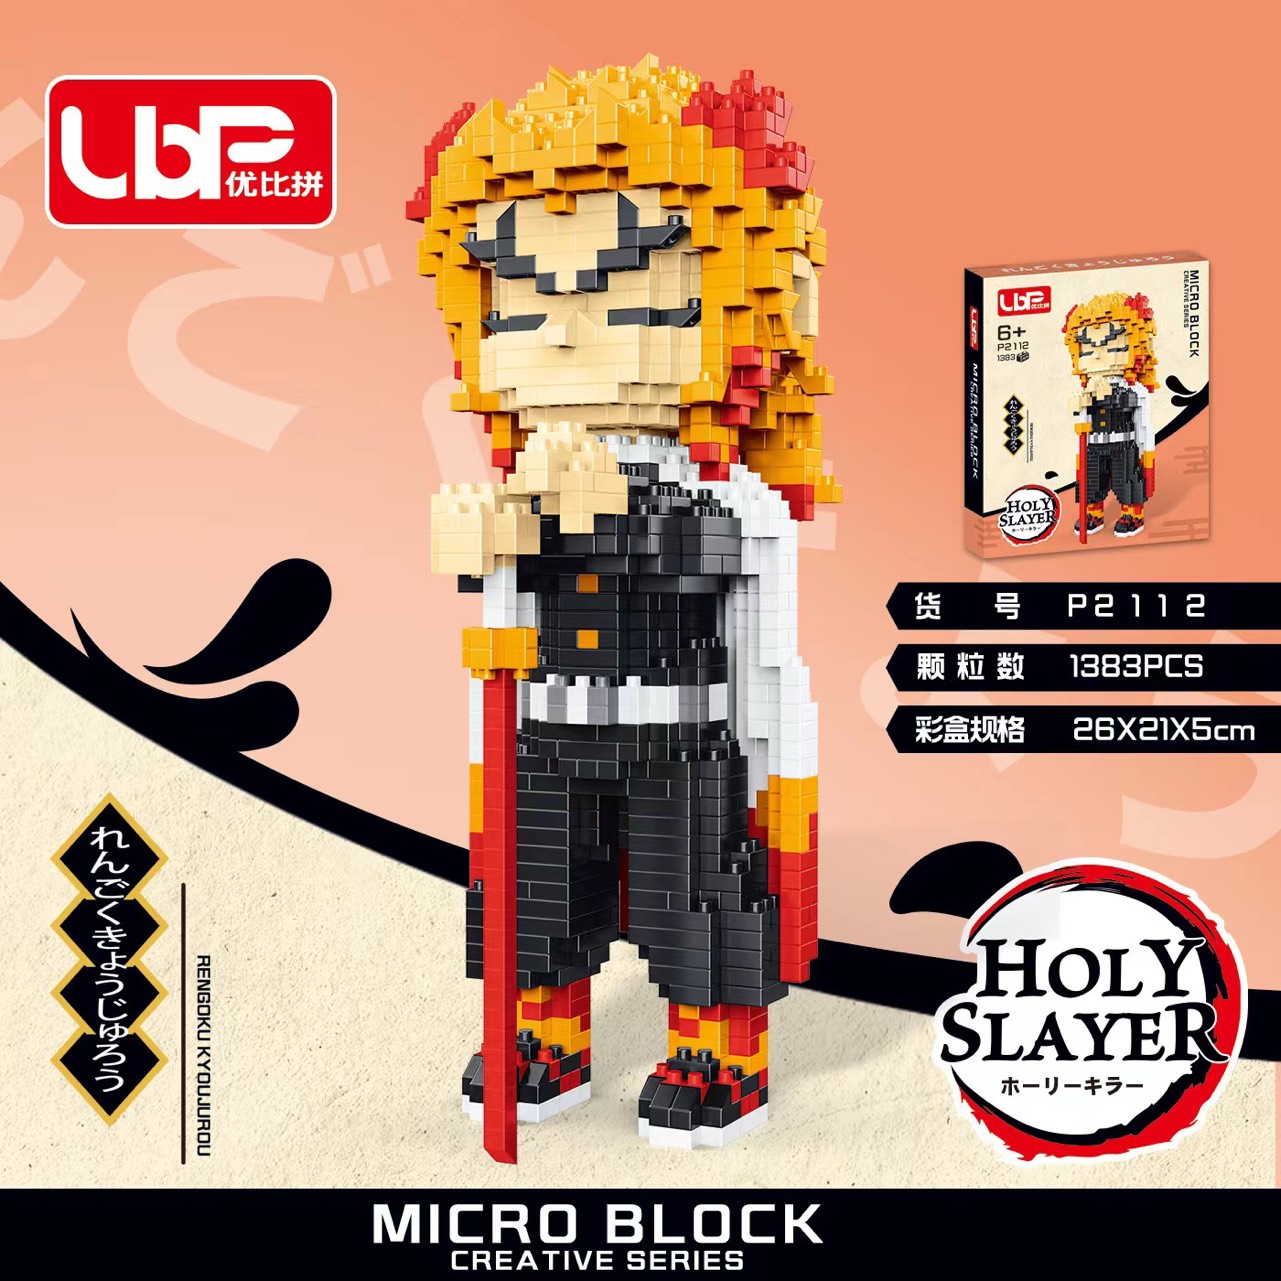 Lego nhân vật Kimetsu No Yaiba  Lắp Ráp lego nhân vật Thanh Gươm Diệt Quỷ Demon Slayer Kimetsu No Yaiba đồ chơi xếp hình lego Demon Slayer.